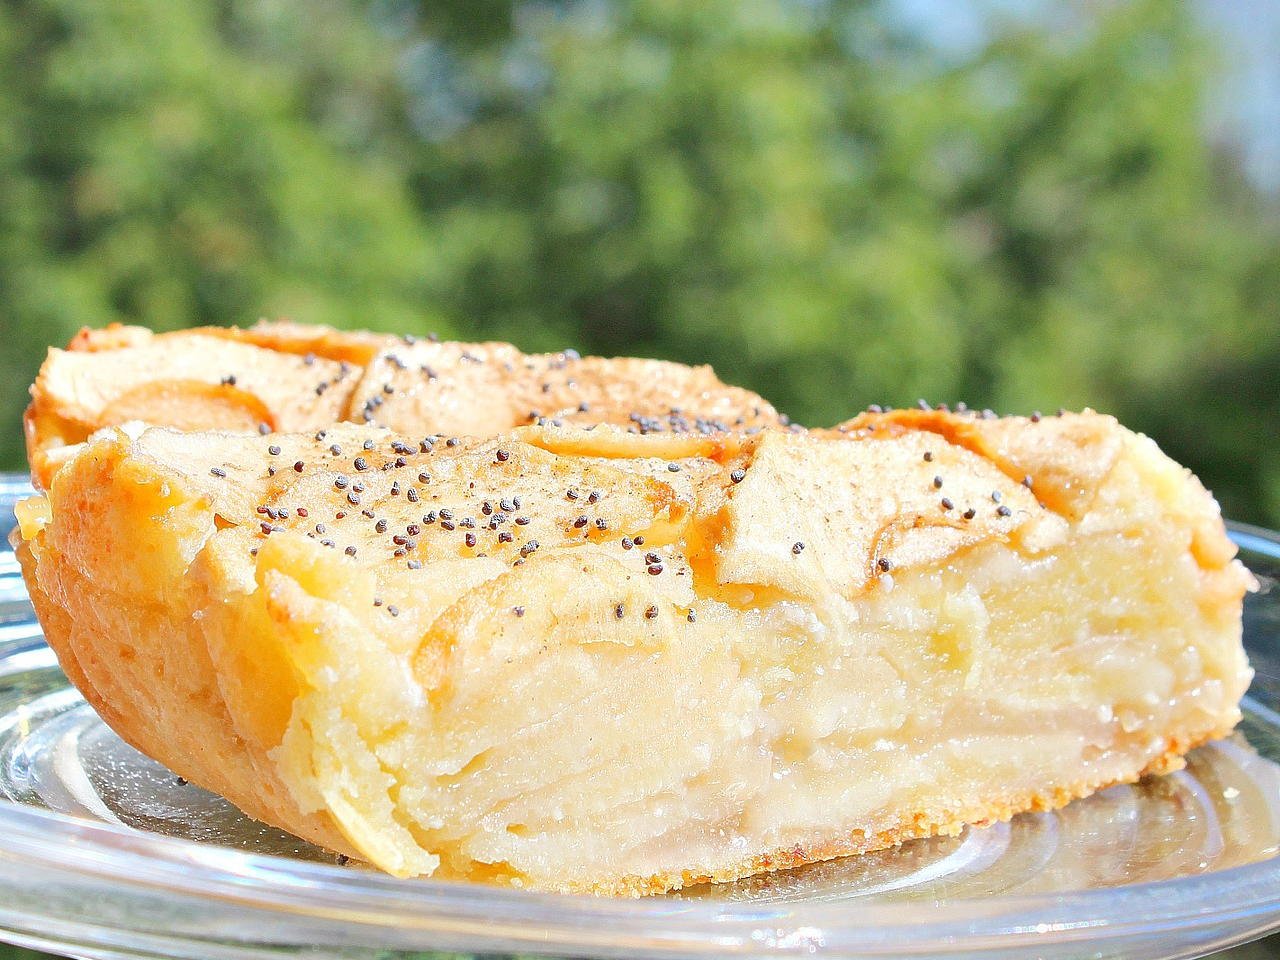 Яблочный пирог с творожным сыром